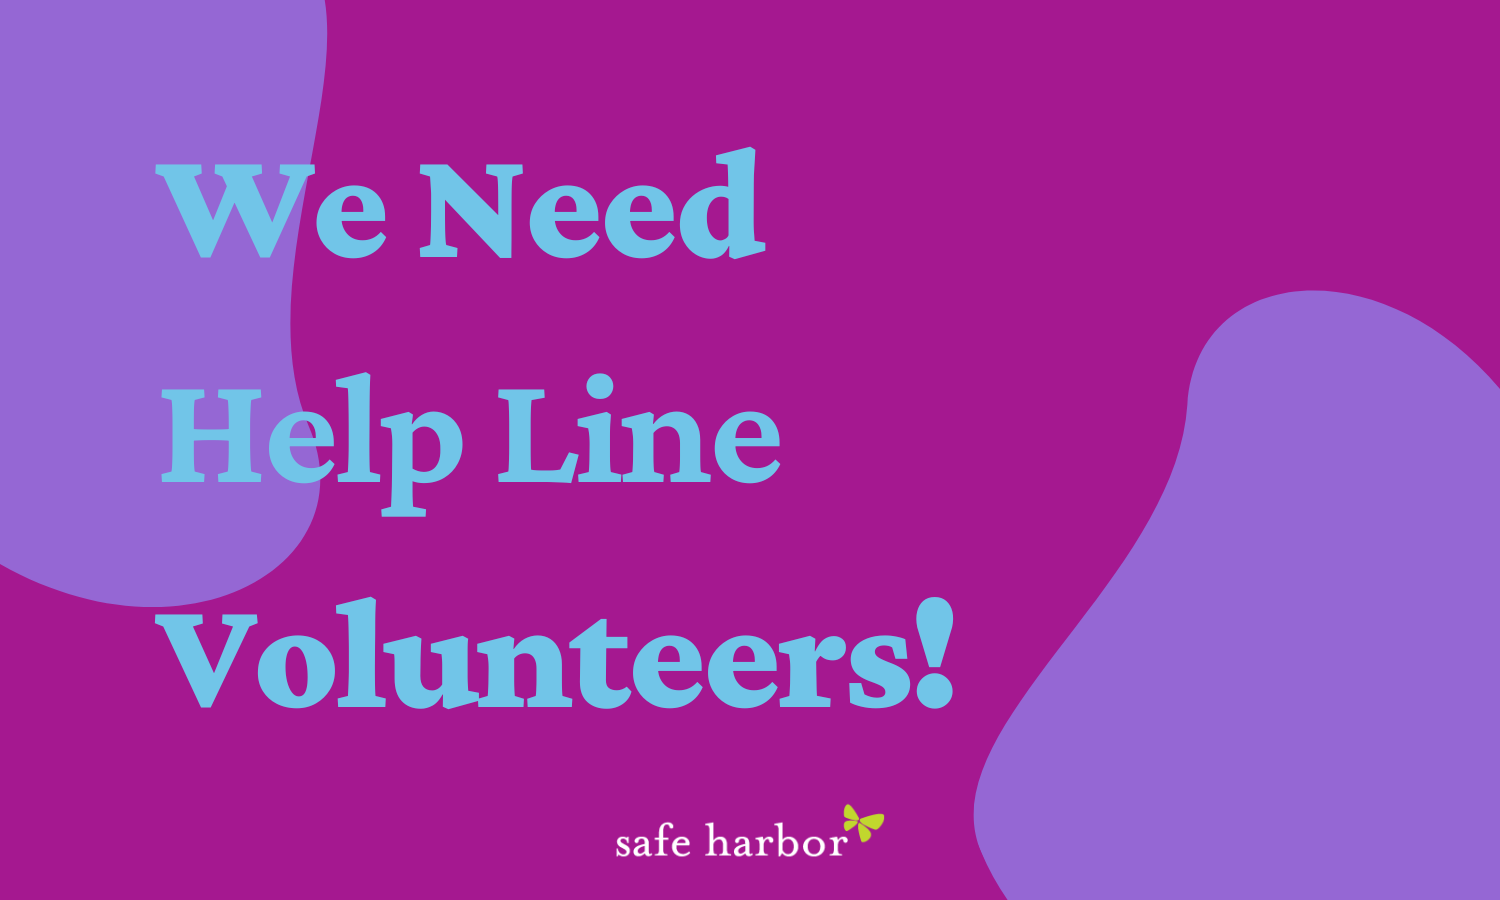 volunteers needed!

HIGH VOLUME OF help line calls
